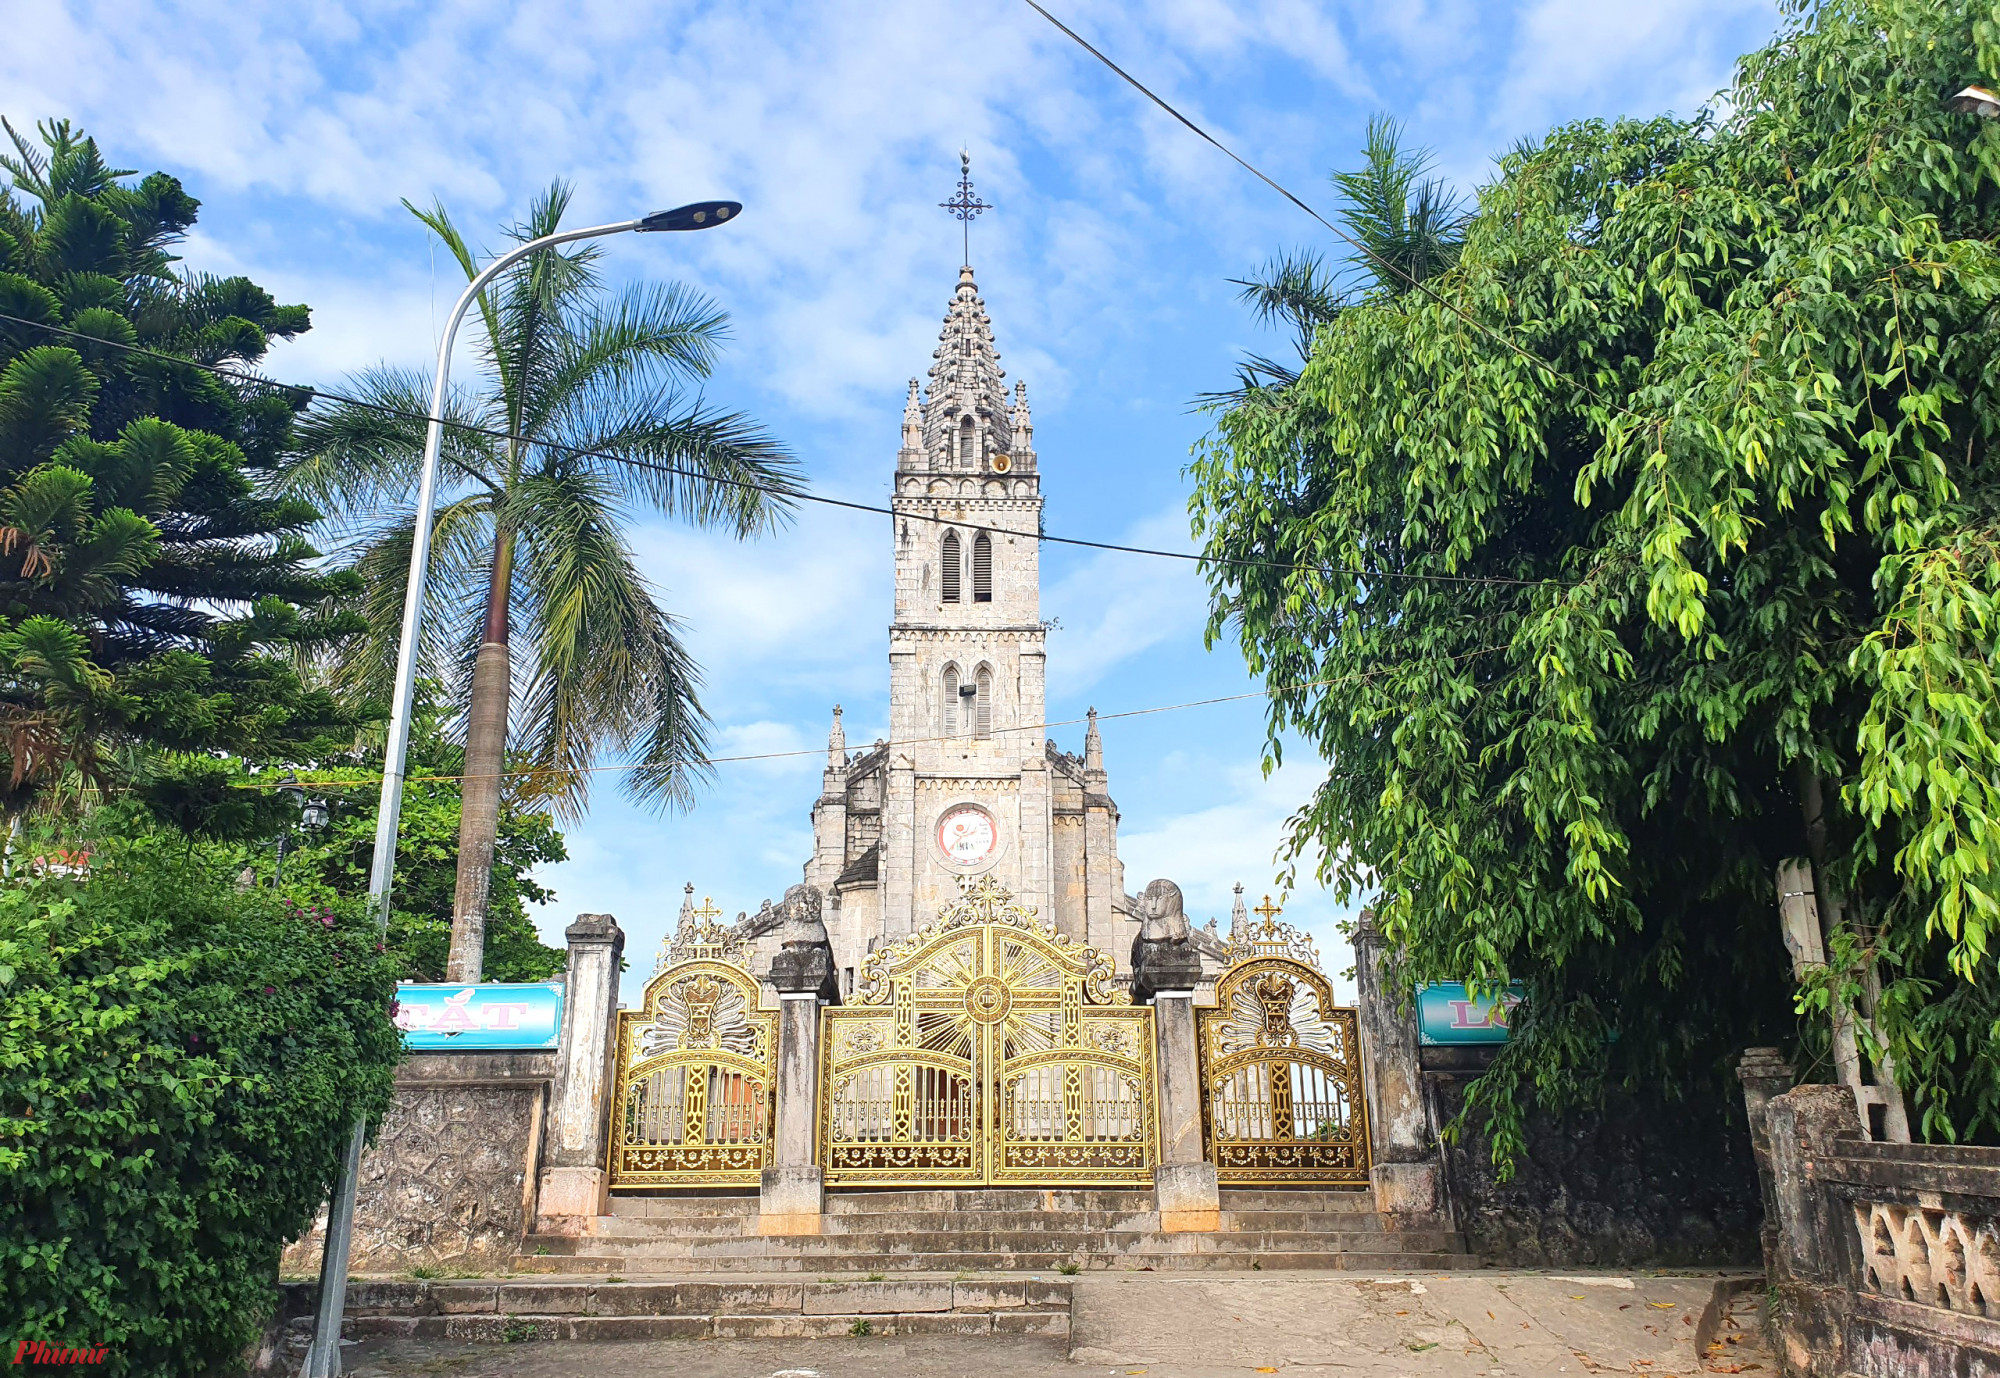 Nhà thờ xứ Bảo Nham được xây dựng trên khuôn viên rộng hơn 7.000m2 ở xã Bảo Thành (huyện Yên Thành, Nghệ An) từ năm 1888. Sau 6 năm xây dựng, năm 1904, ngôi thánh đường này chính thức hoàn thành và đưa vào sử dụng.